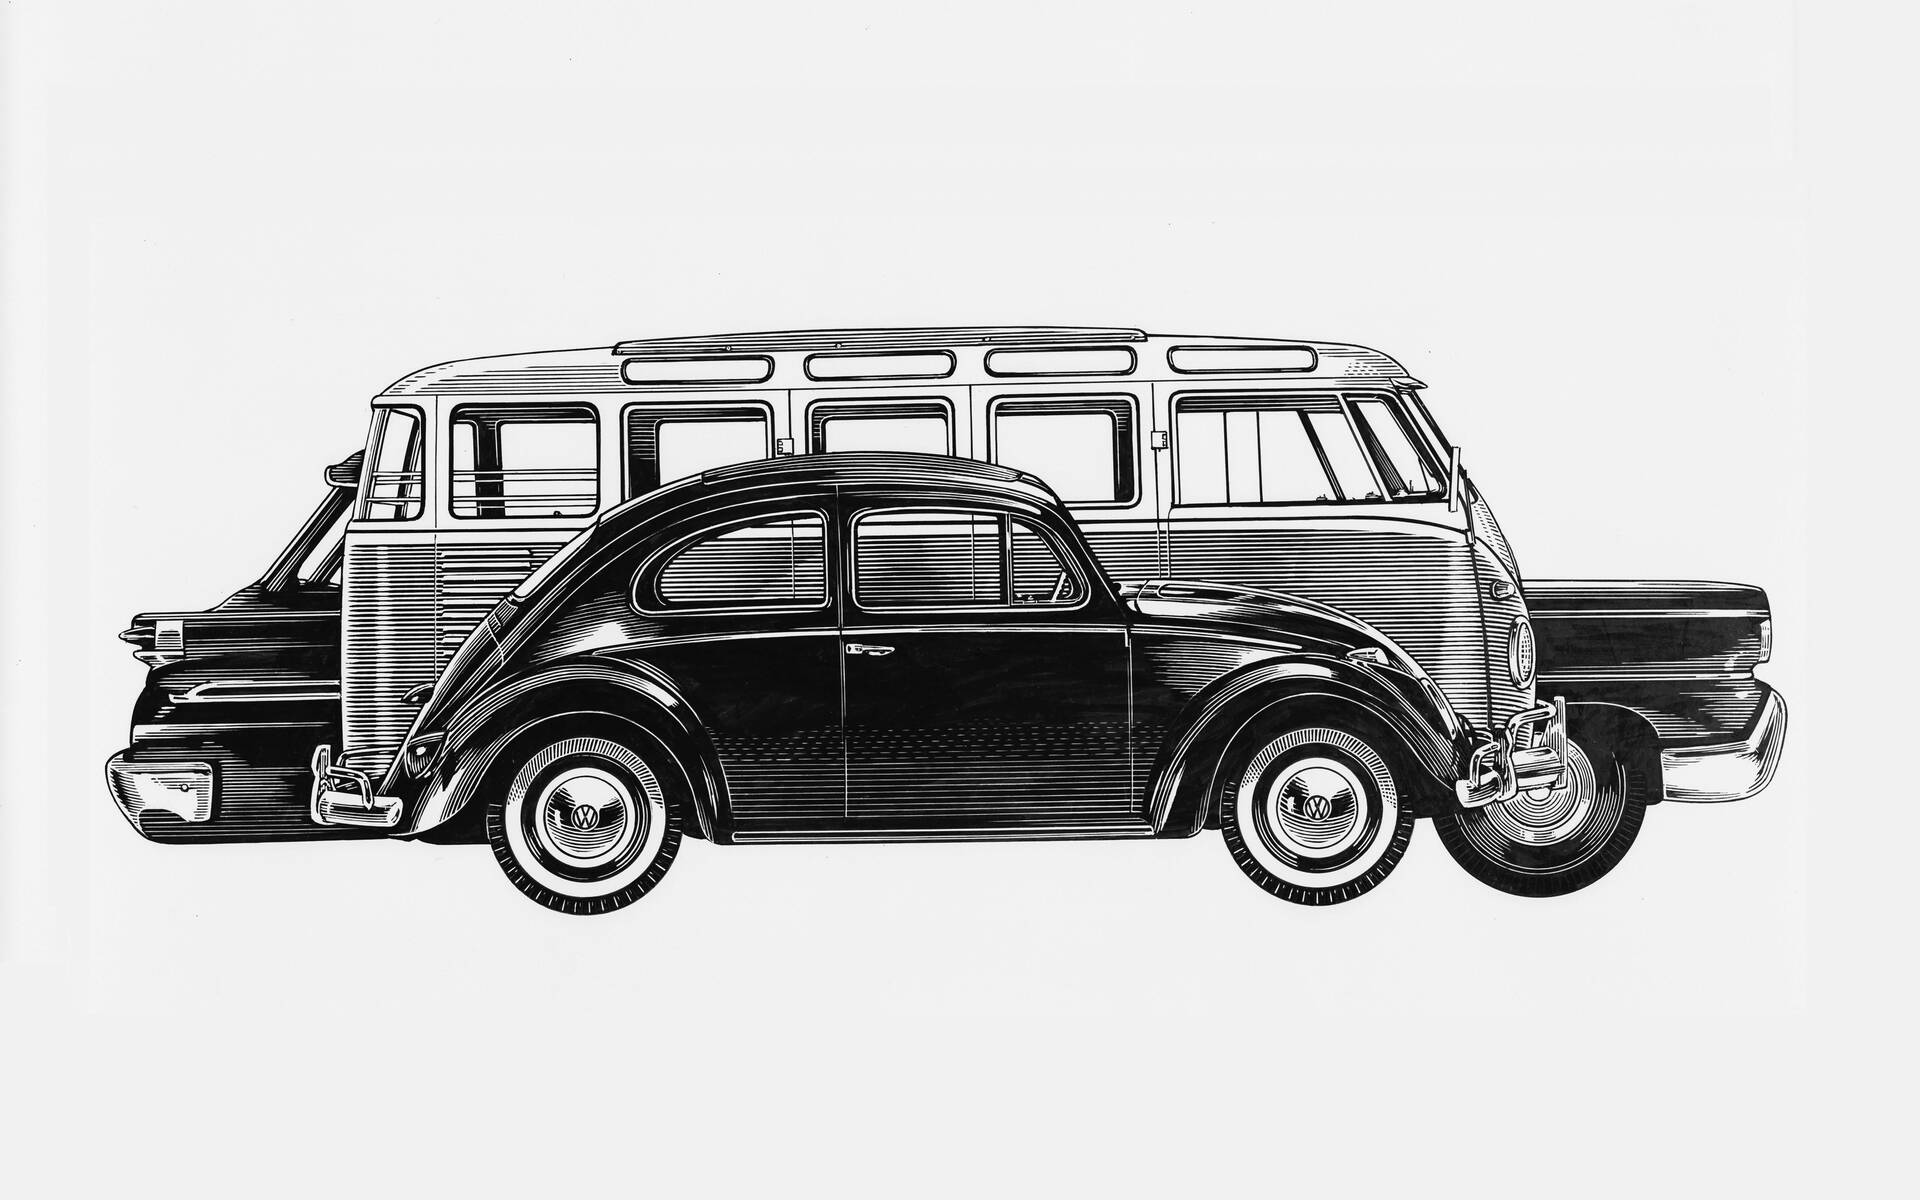 Le Volkswagen Microbus d'hier à aujourd'hui 516484-le-volkswagen-microbus-d-hier-a-aujourd-hui